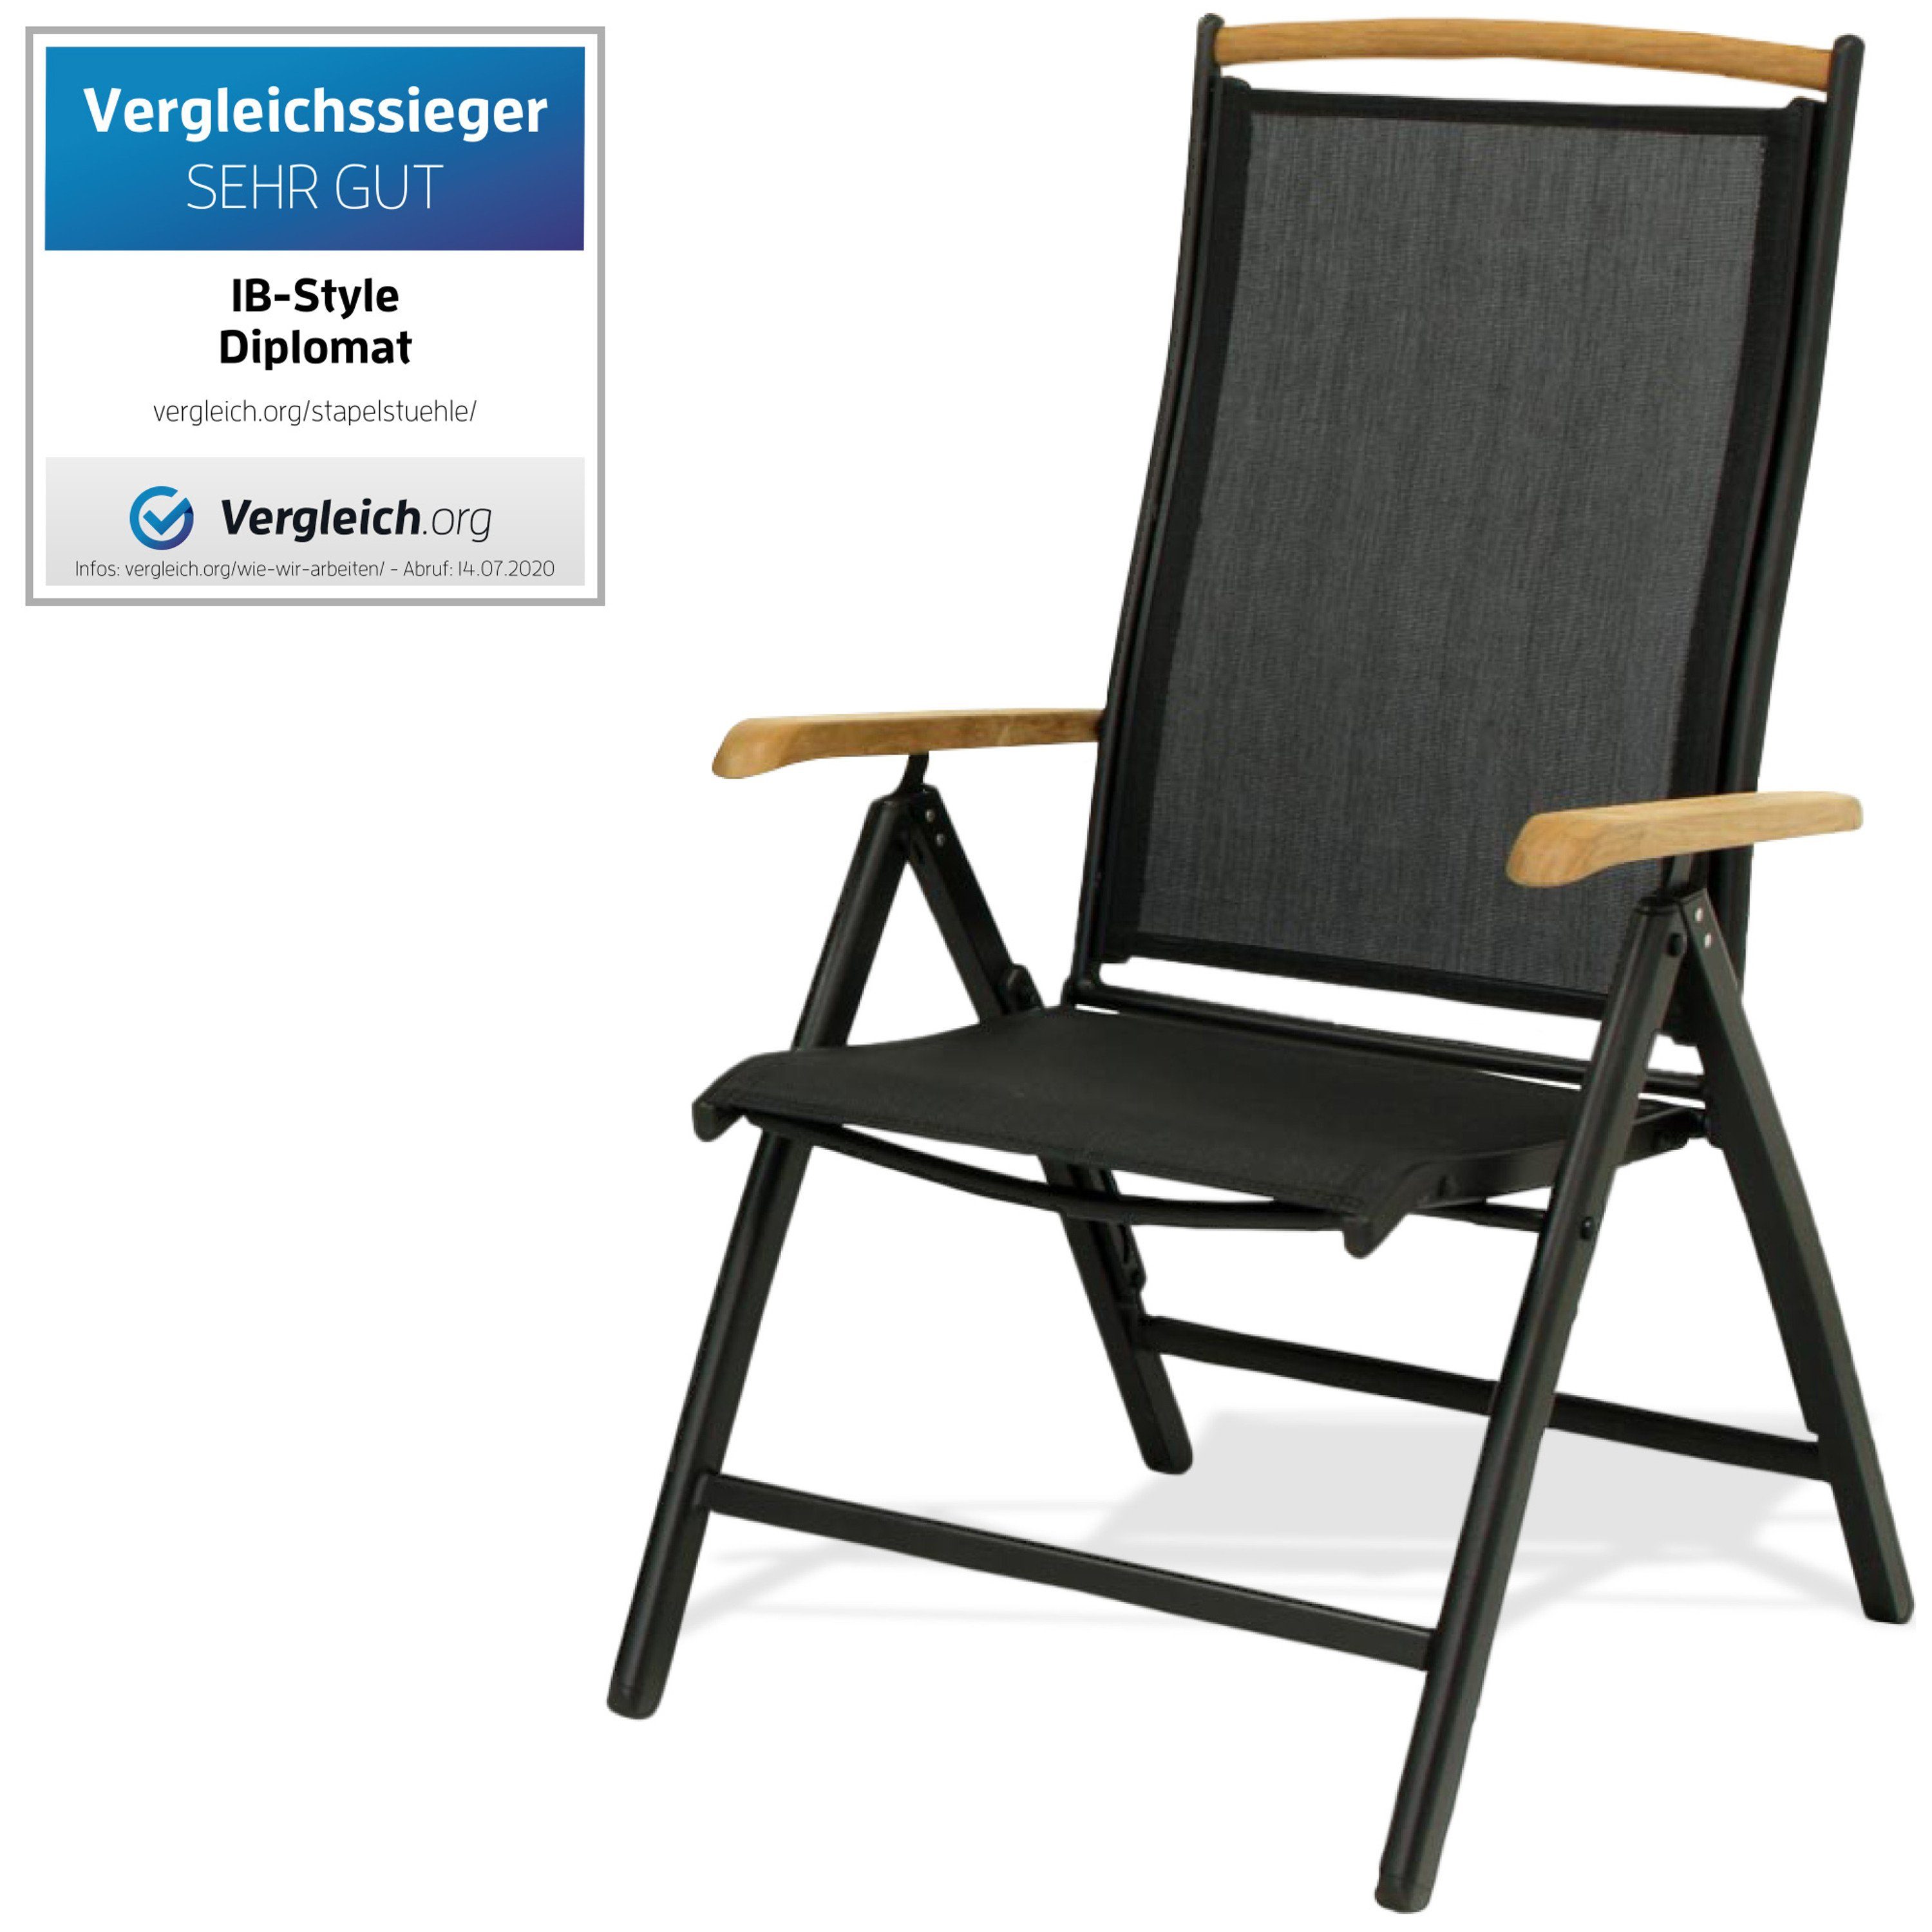 ib style Gartenstuhl »DIPLOMAT SCHWARZ - Klappstuhl mit Teak« (Hochstuhl),  Mehrfach gewebt Hoher Sitzkomfort online kaufen | OTTO